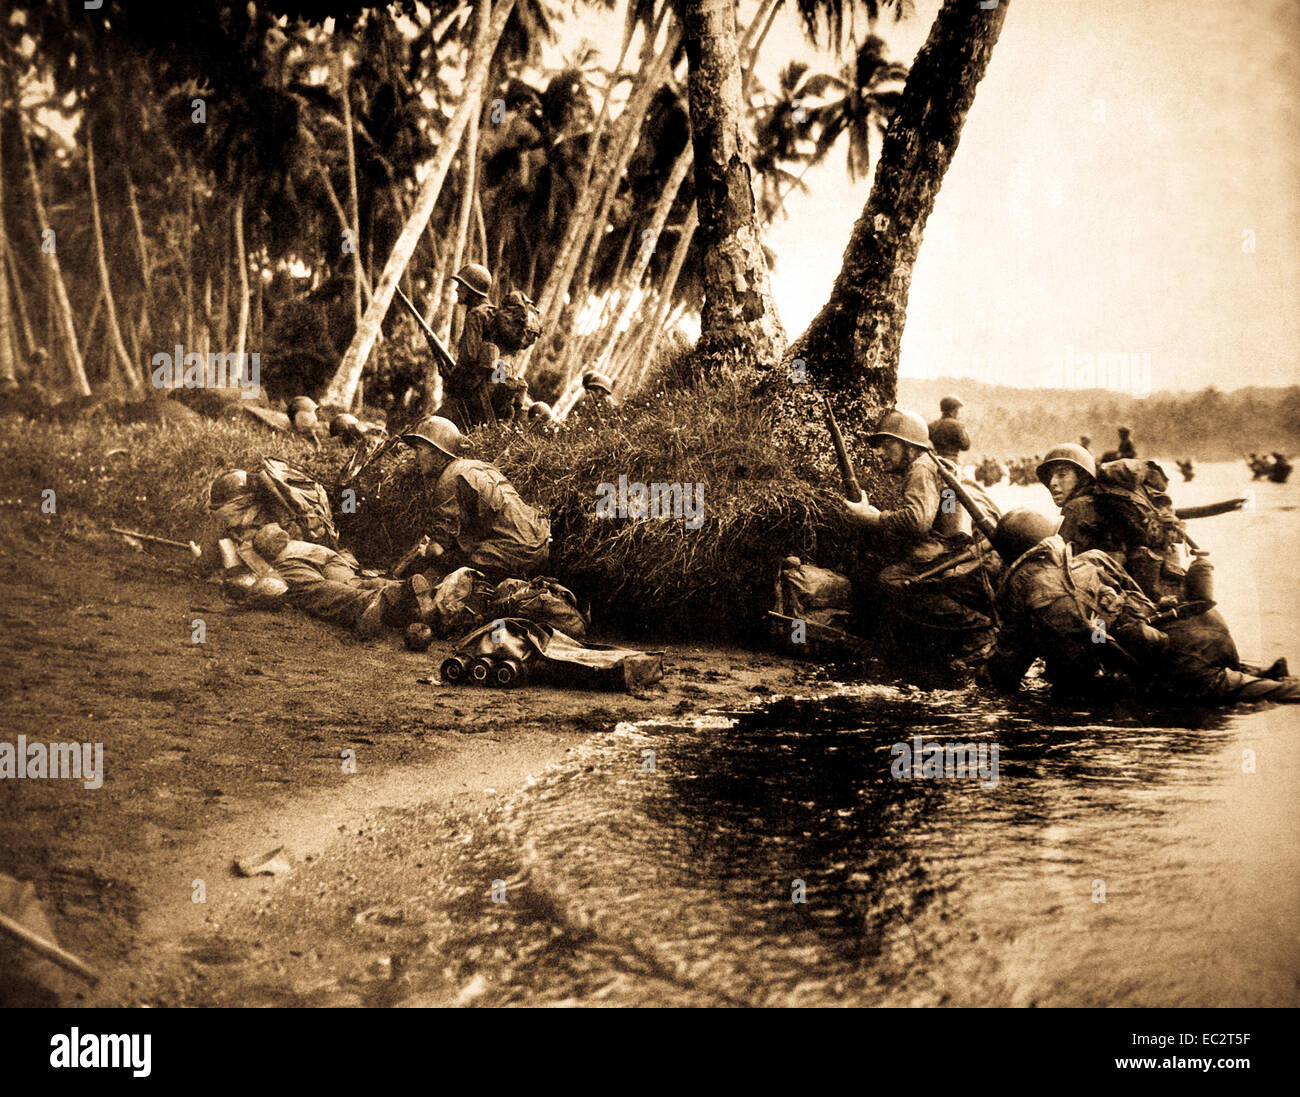 Las operaciones de desembarque en la isla redova, Islas Salomón, el 30 de  junio de 1943. atacar al despuntar el día en una fuerte tormenta, los  primeros americanos en tierra asoman detrás